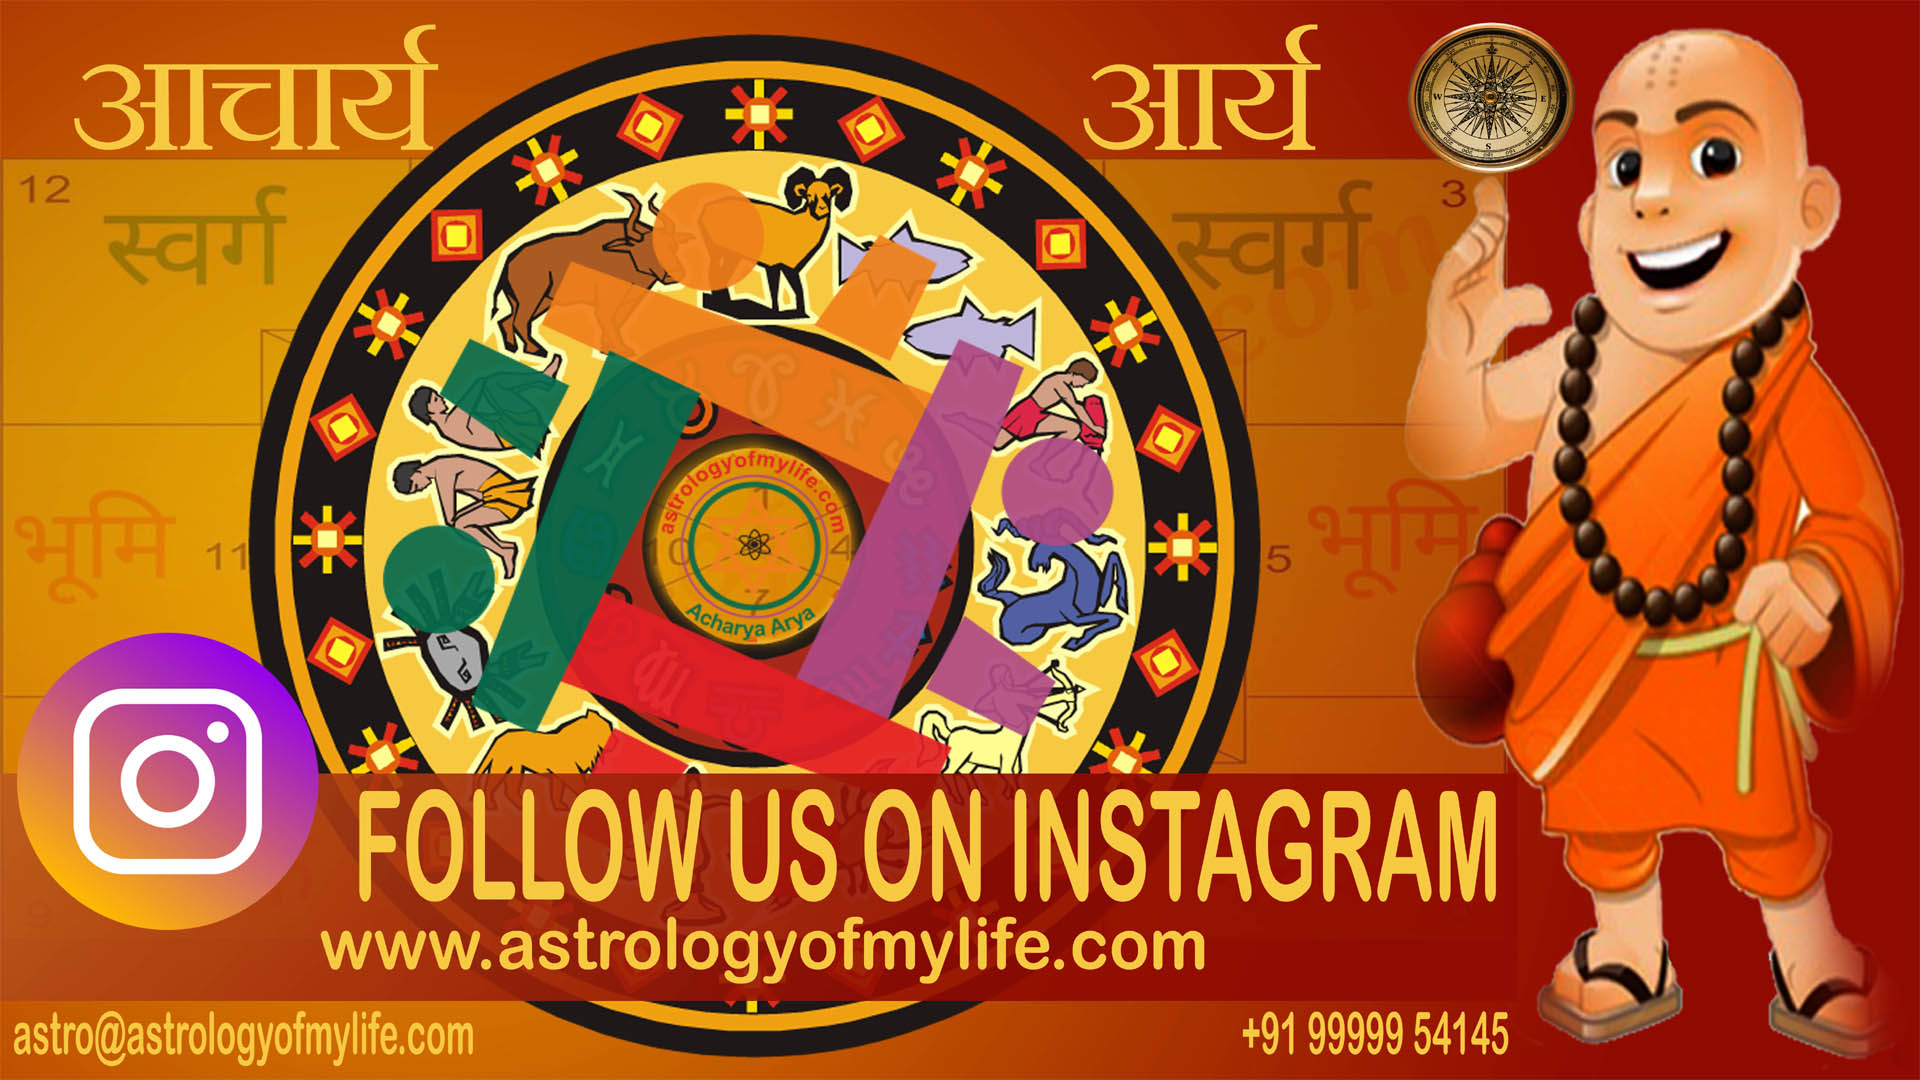 astrologer in instagram